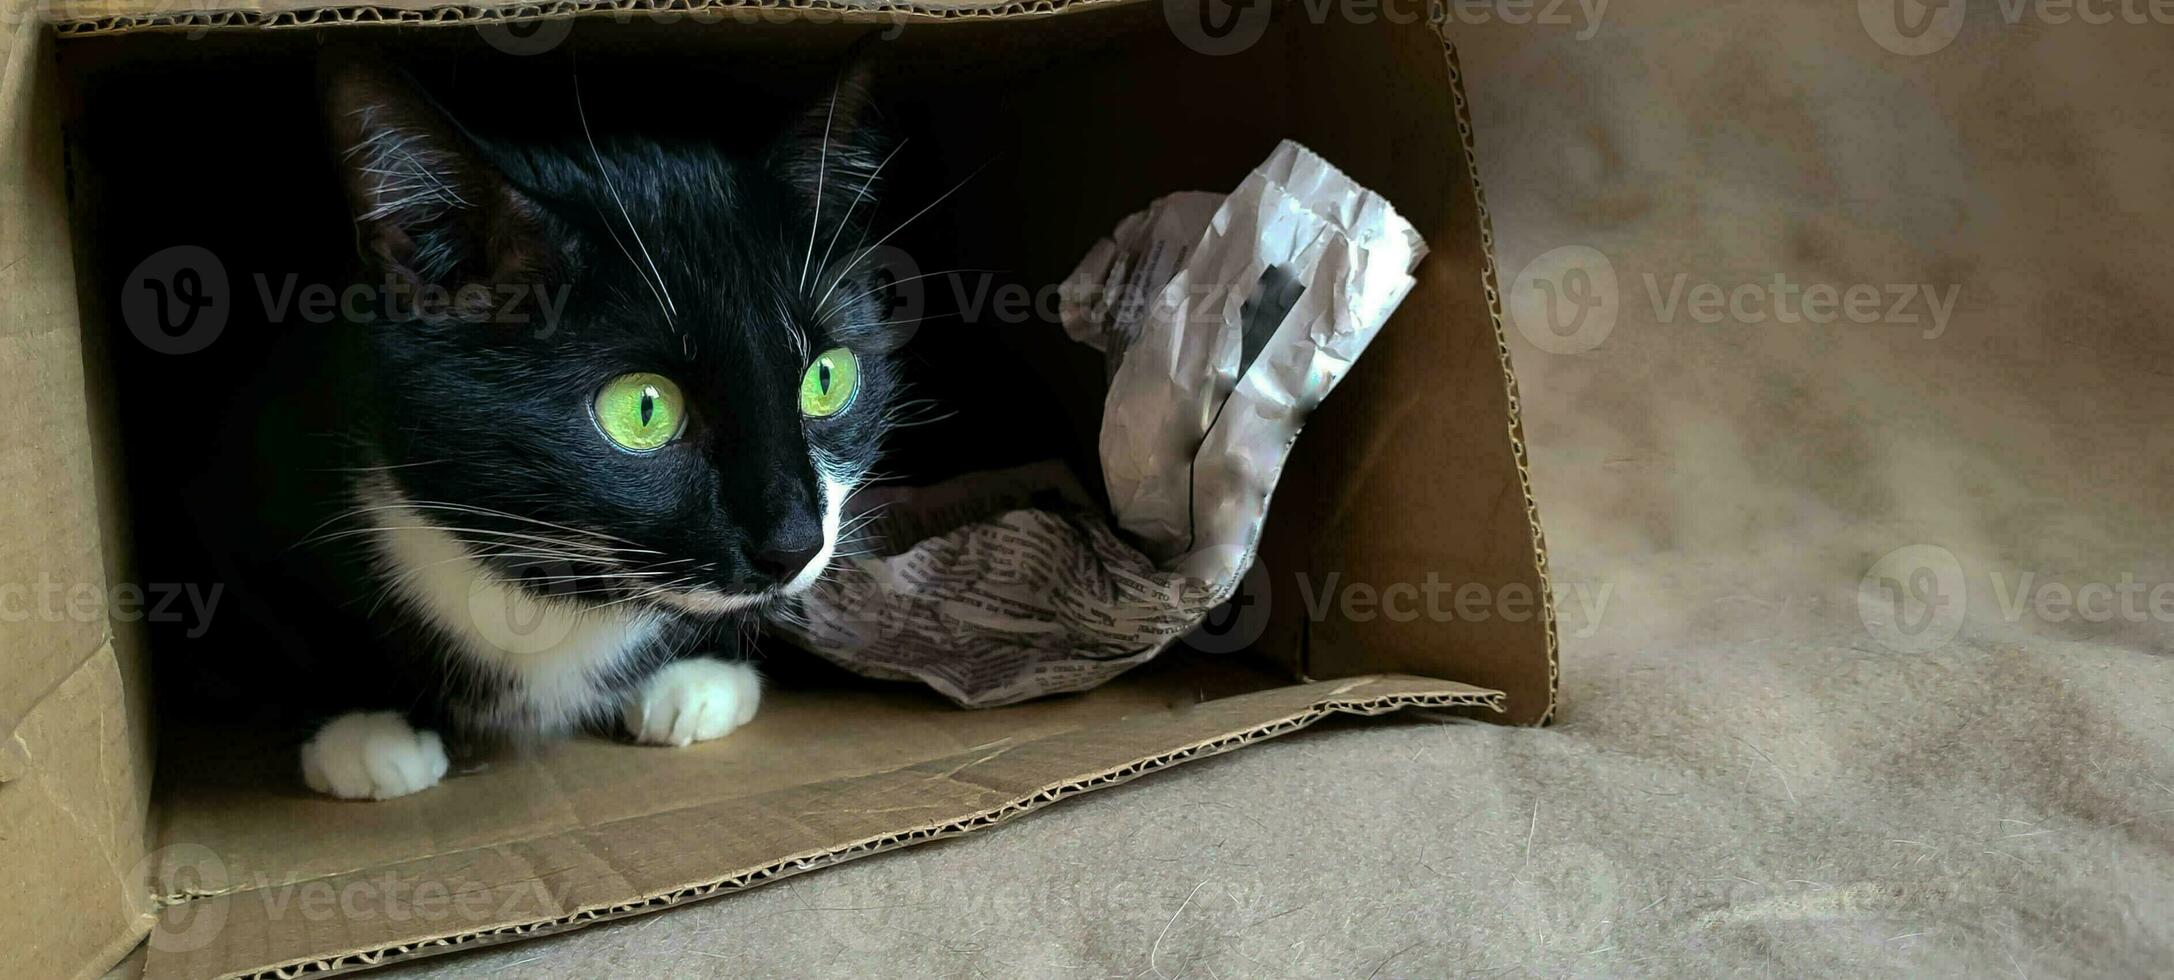 zwart kat met groen ogen in een doos detailopname. foto